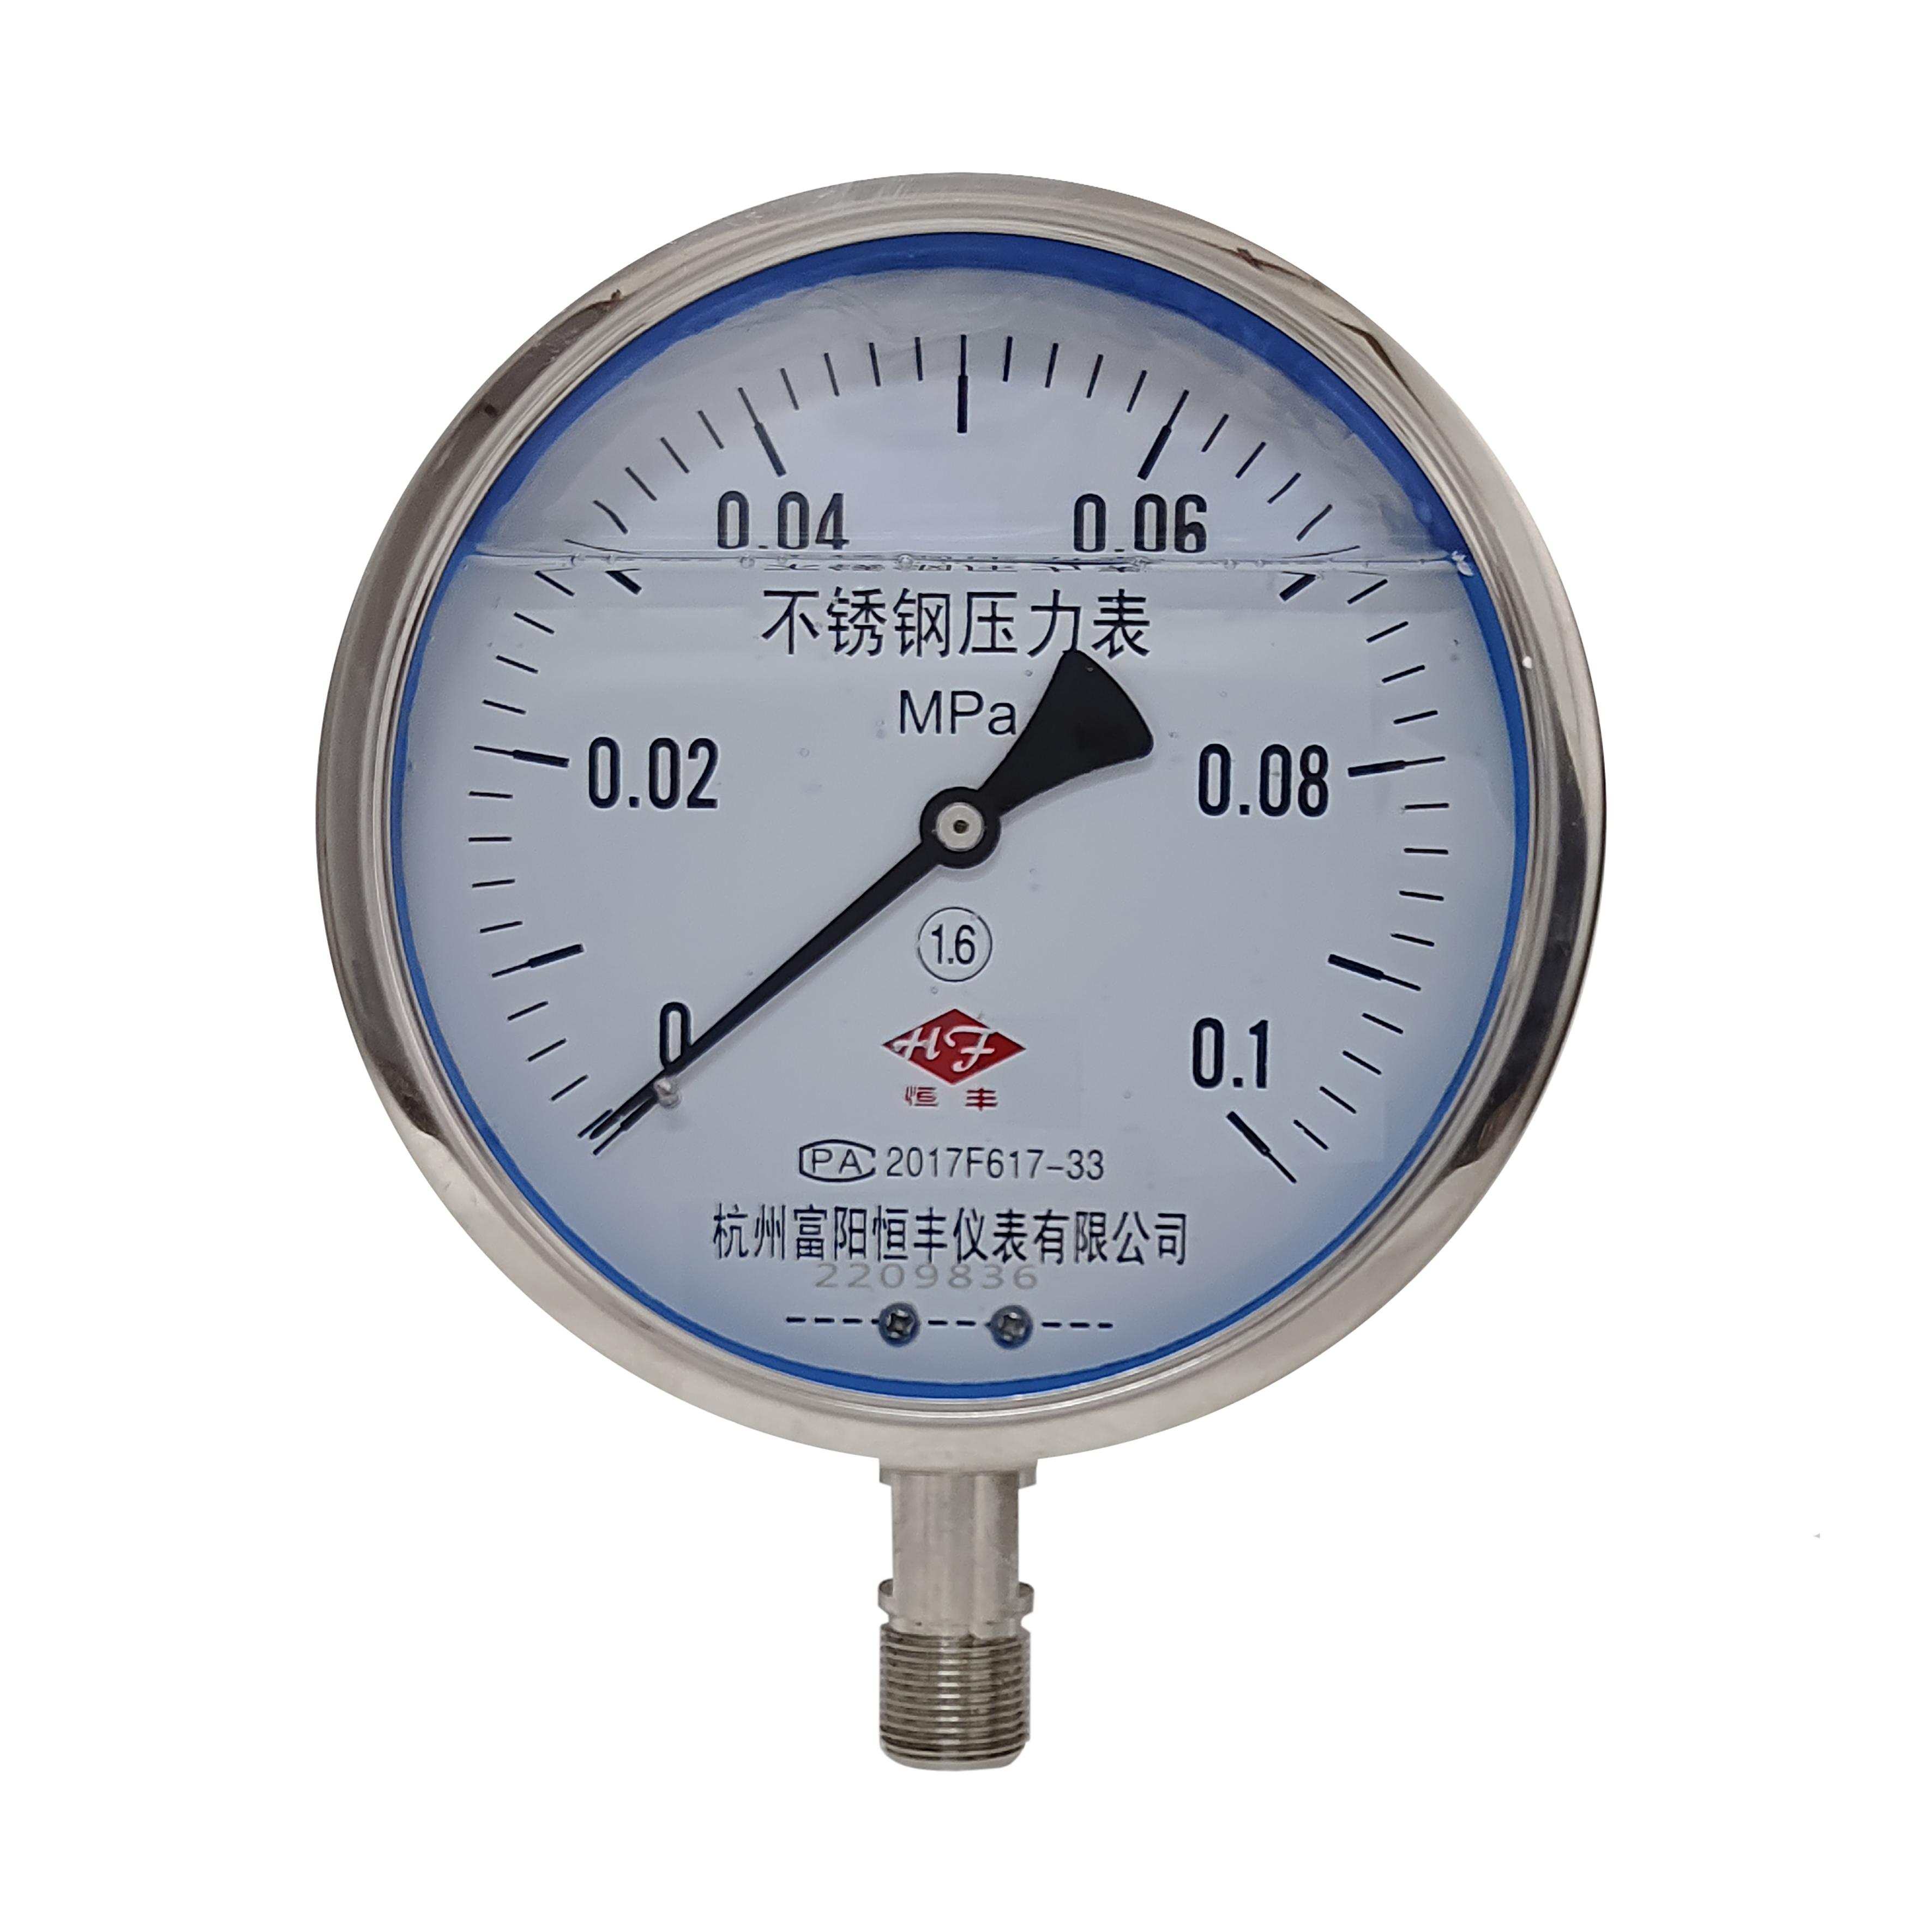 Y150BF stainless steel pressure gauge